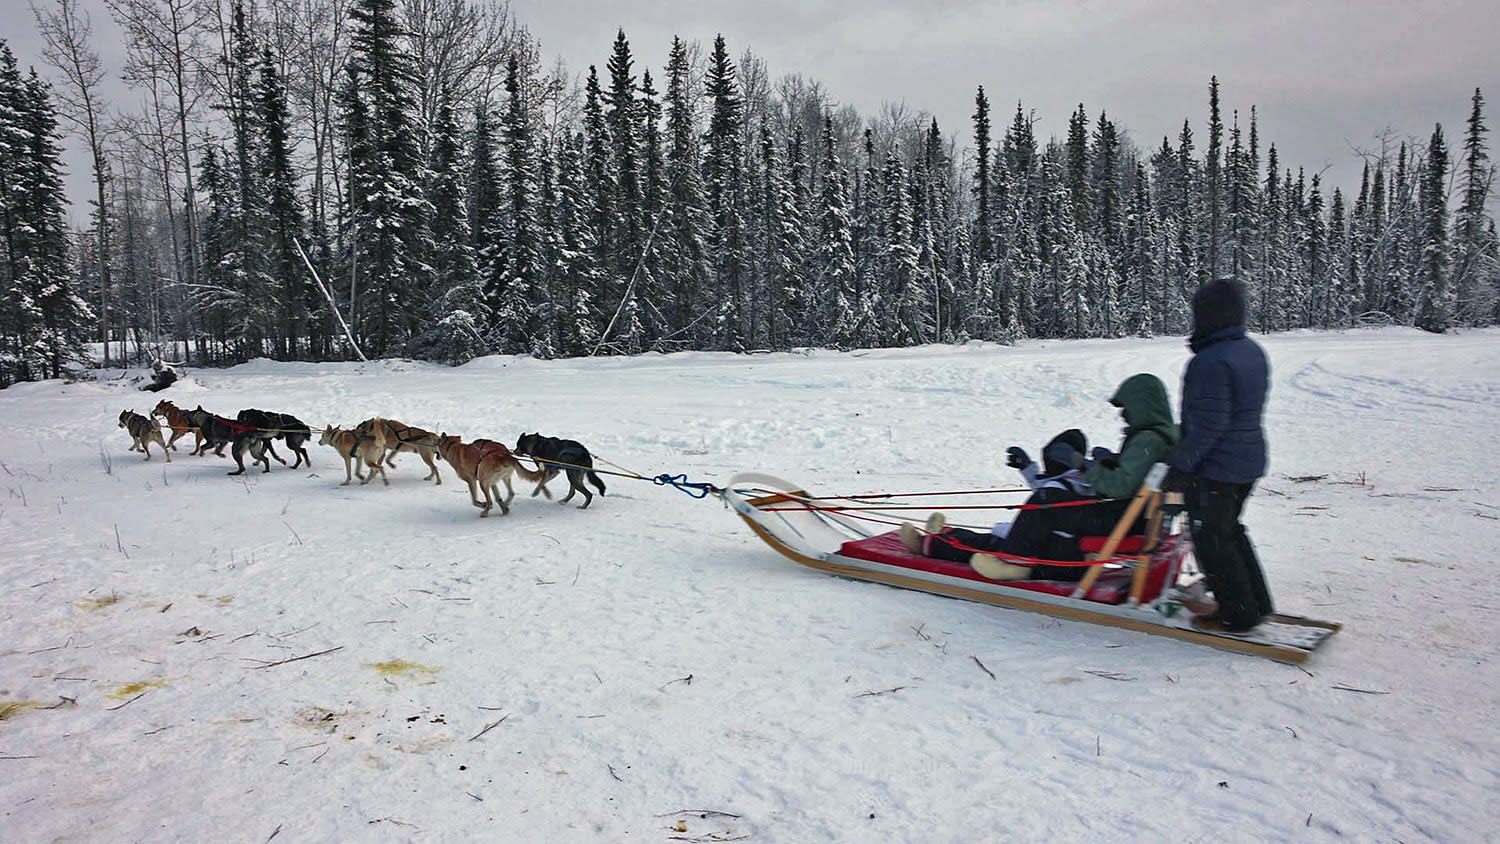 A team of Alaskan huskies lead a sled through a snowy forest near Fairbanks, AK